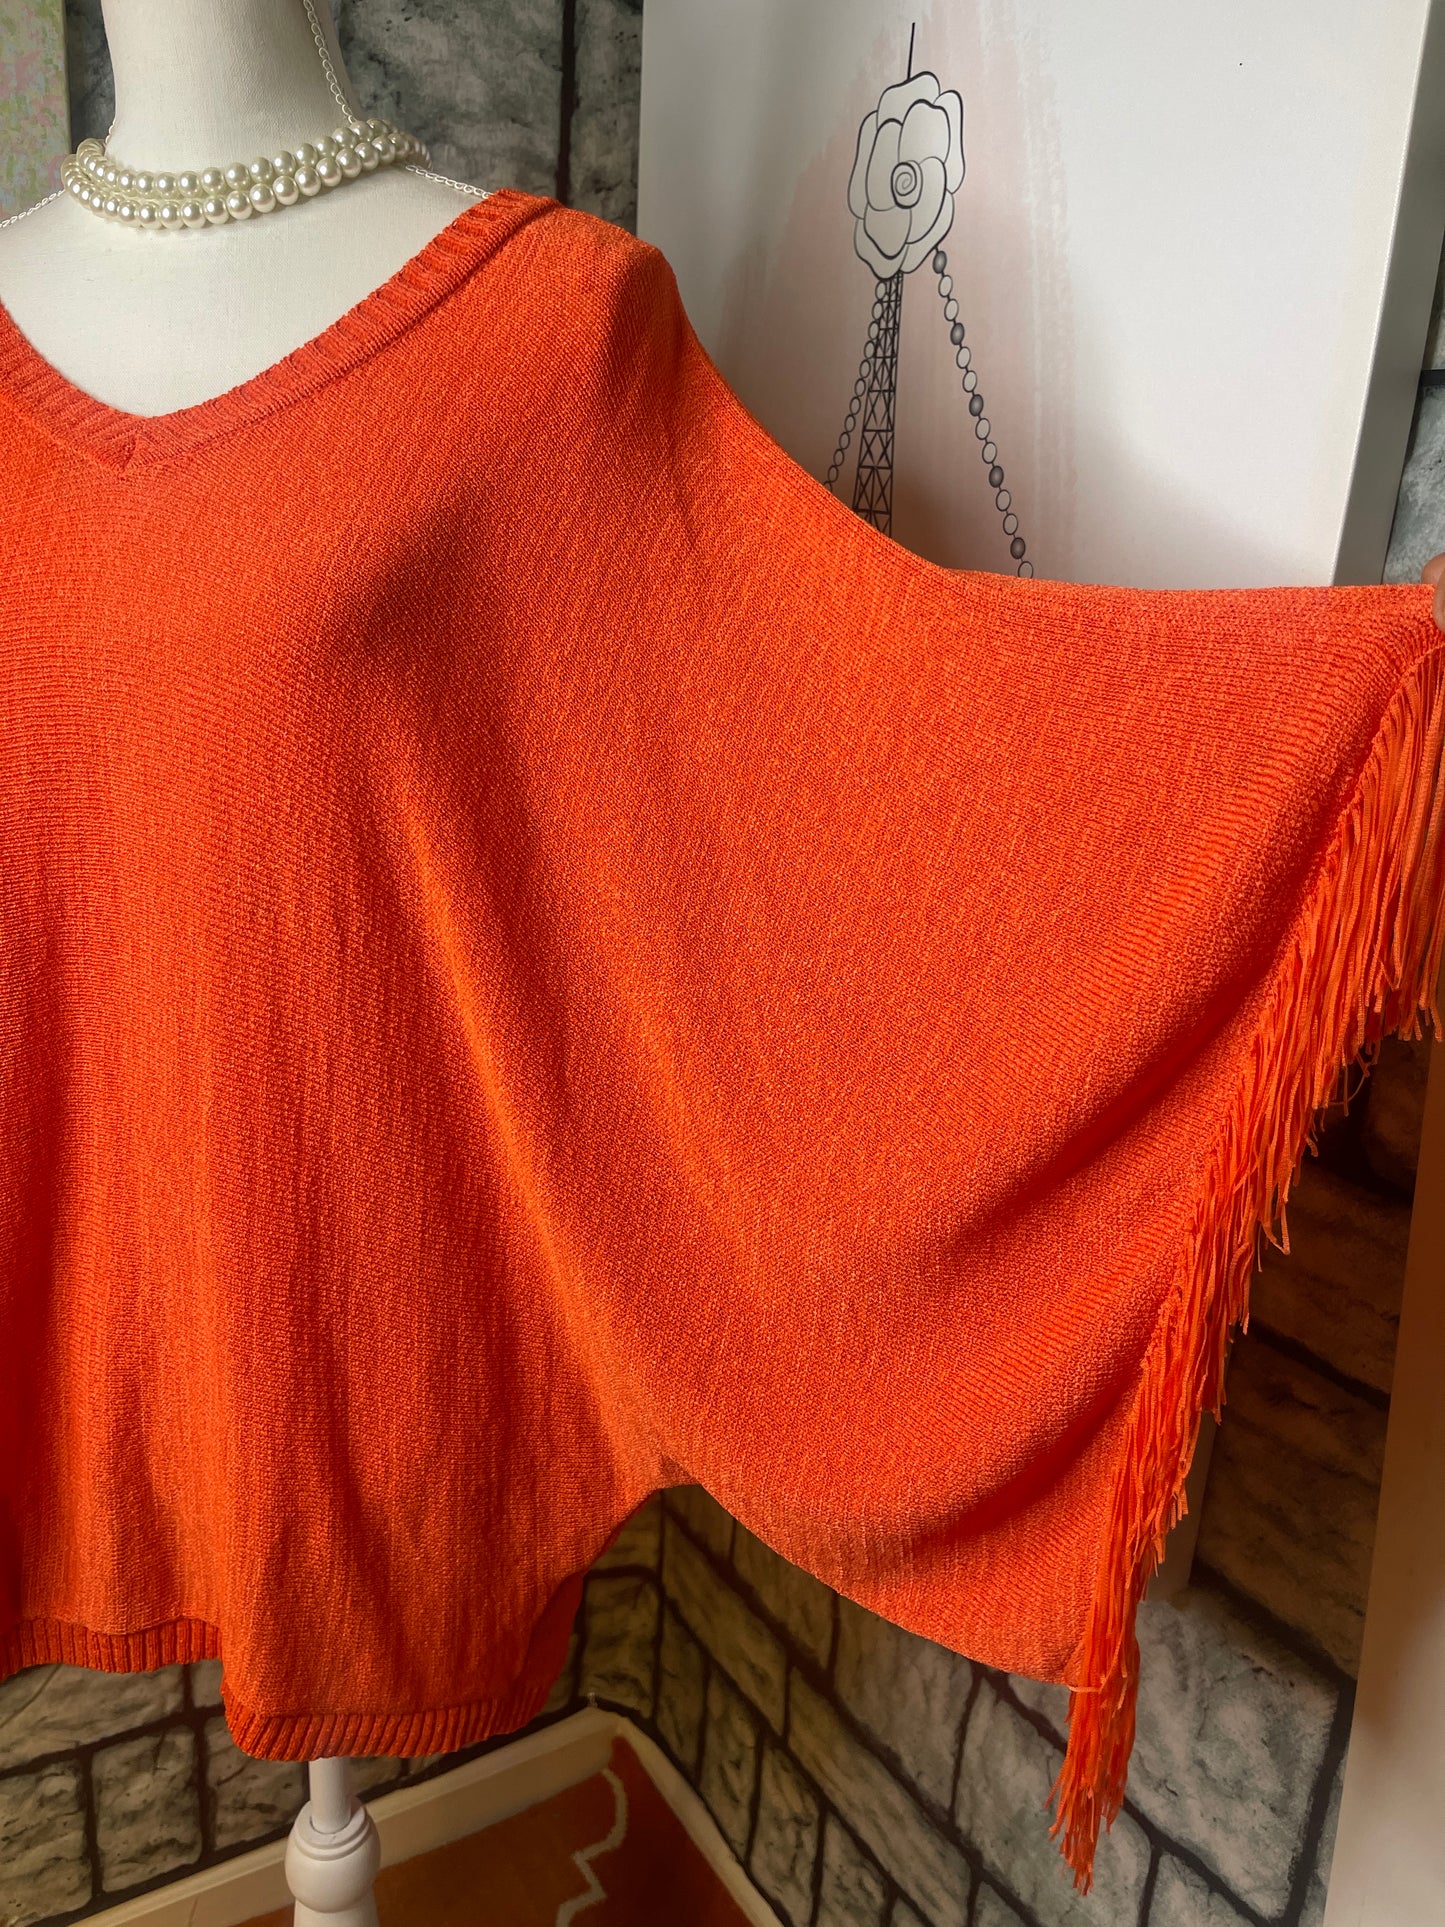 Orange fringe blouse women sz One size (would say fits up to Large)